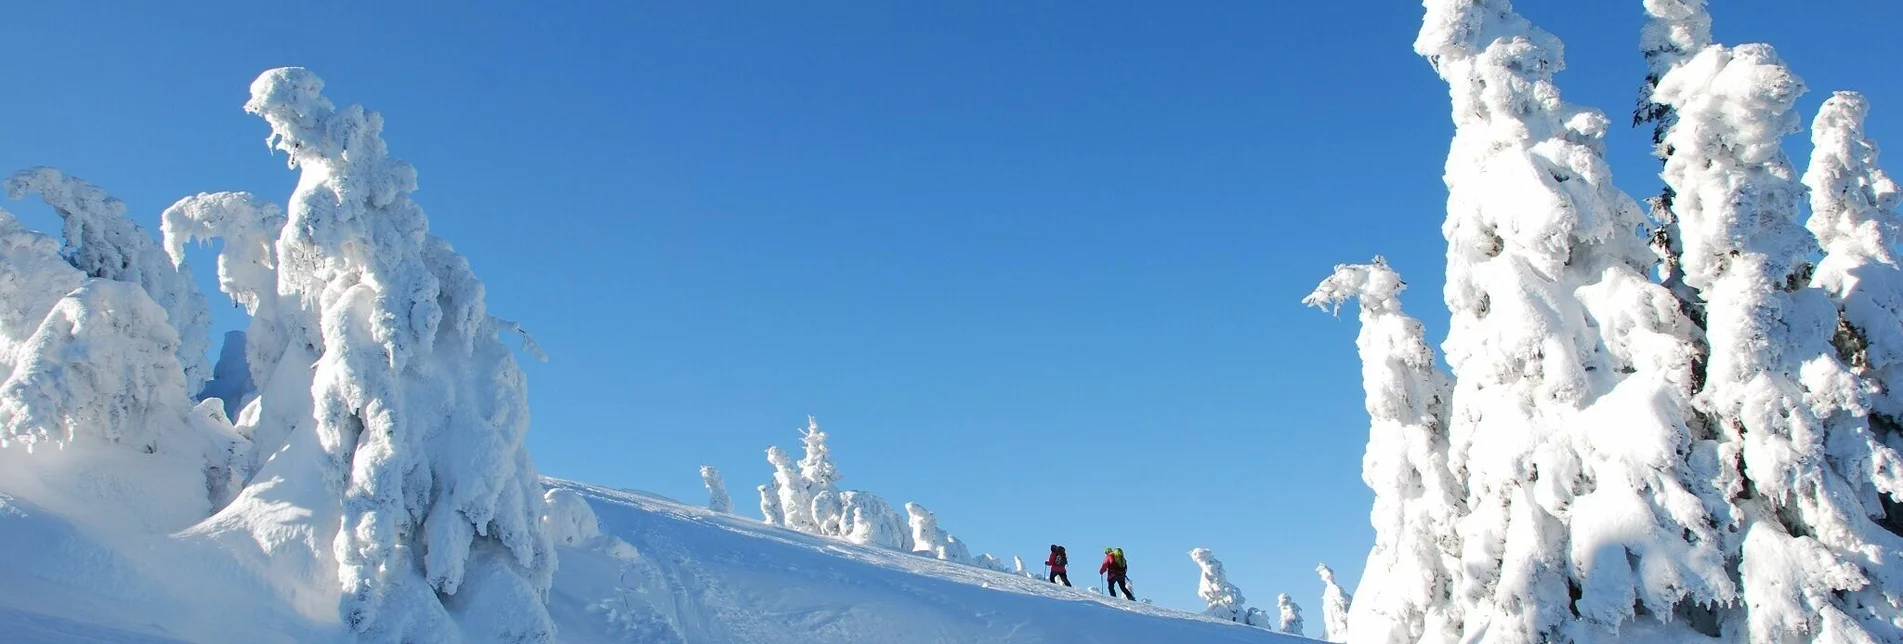 Skitour Skitour auf die Schneealm - Touren-Impression #1 | © Naturpark Mürzer Oberland